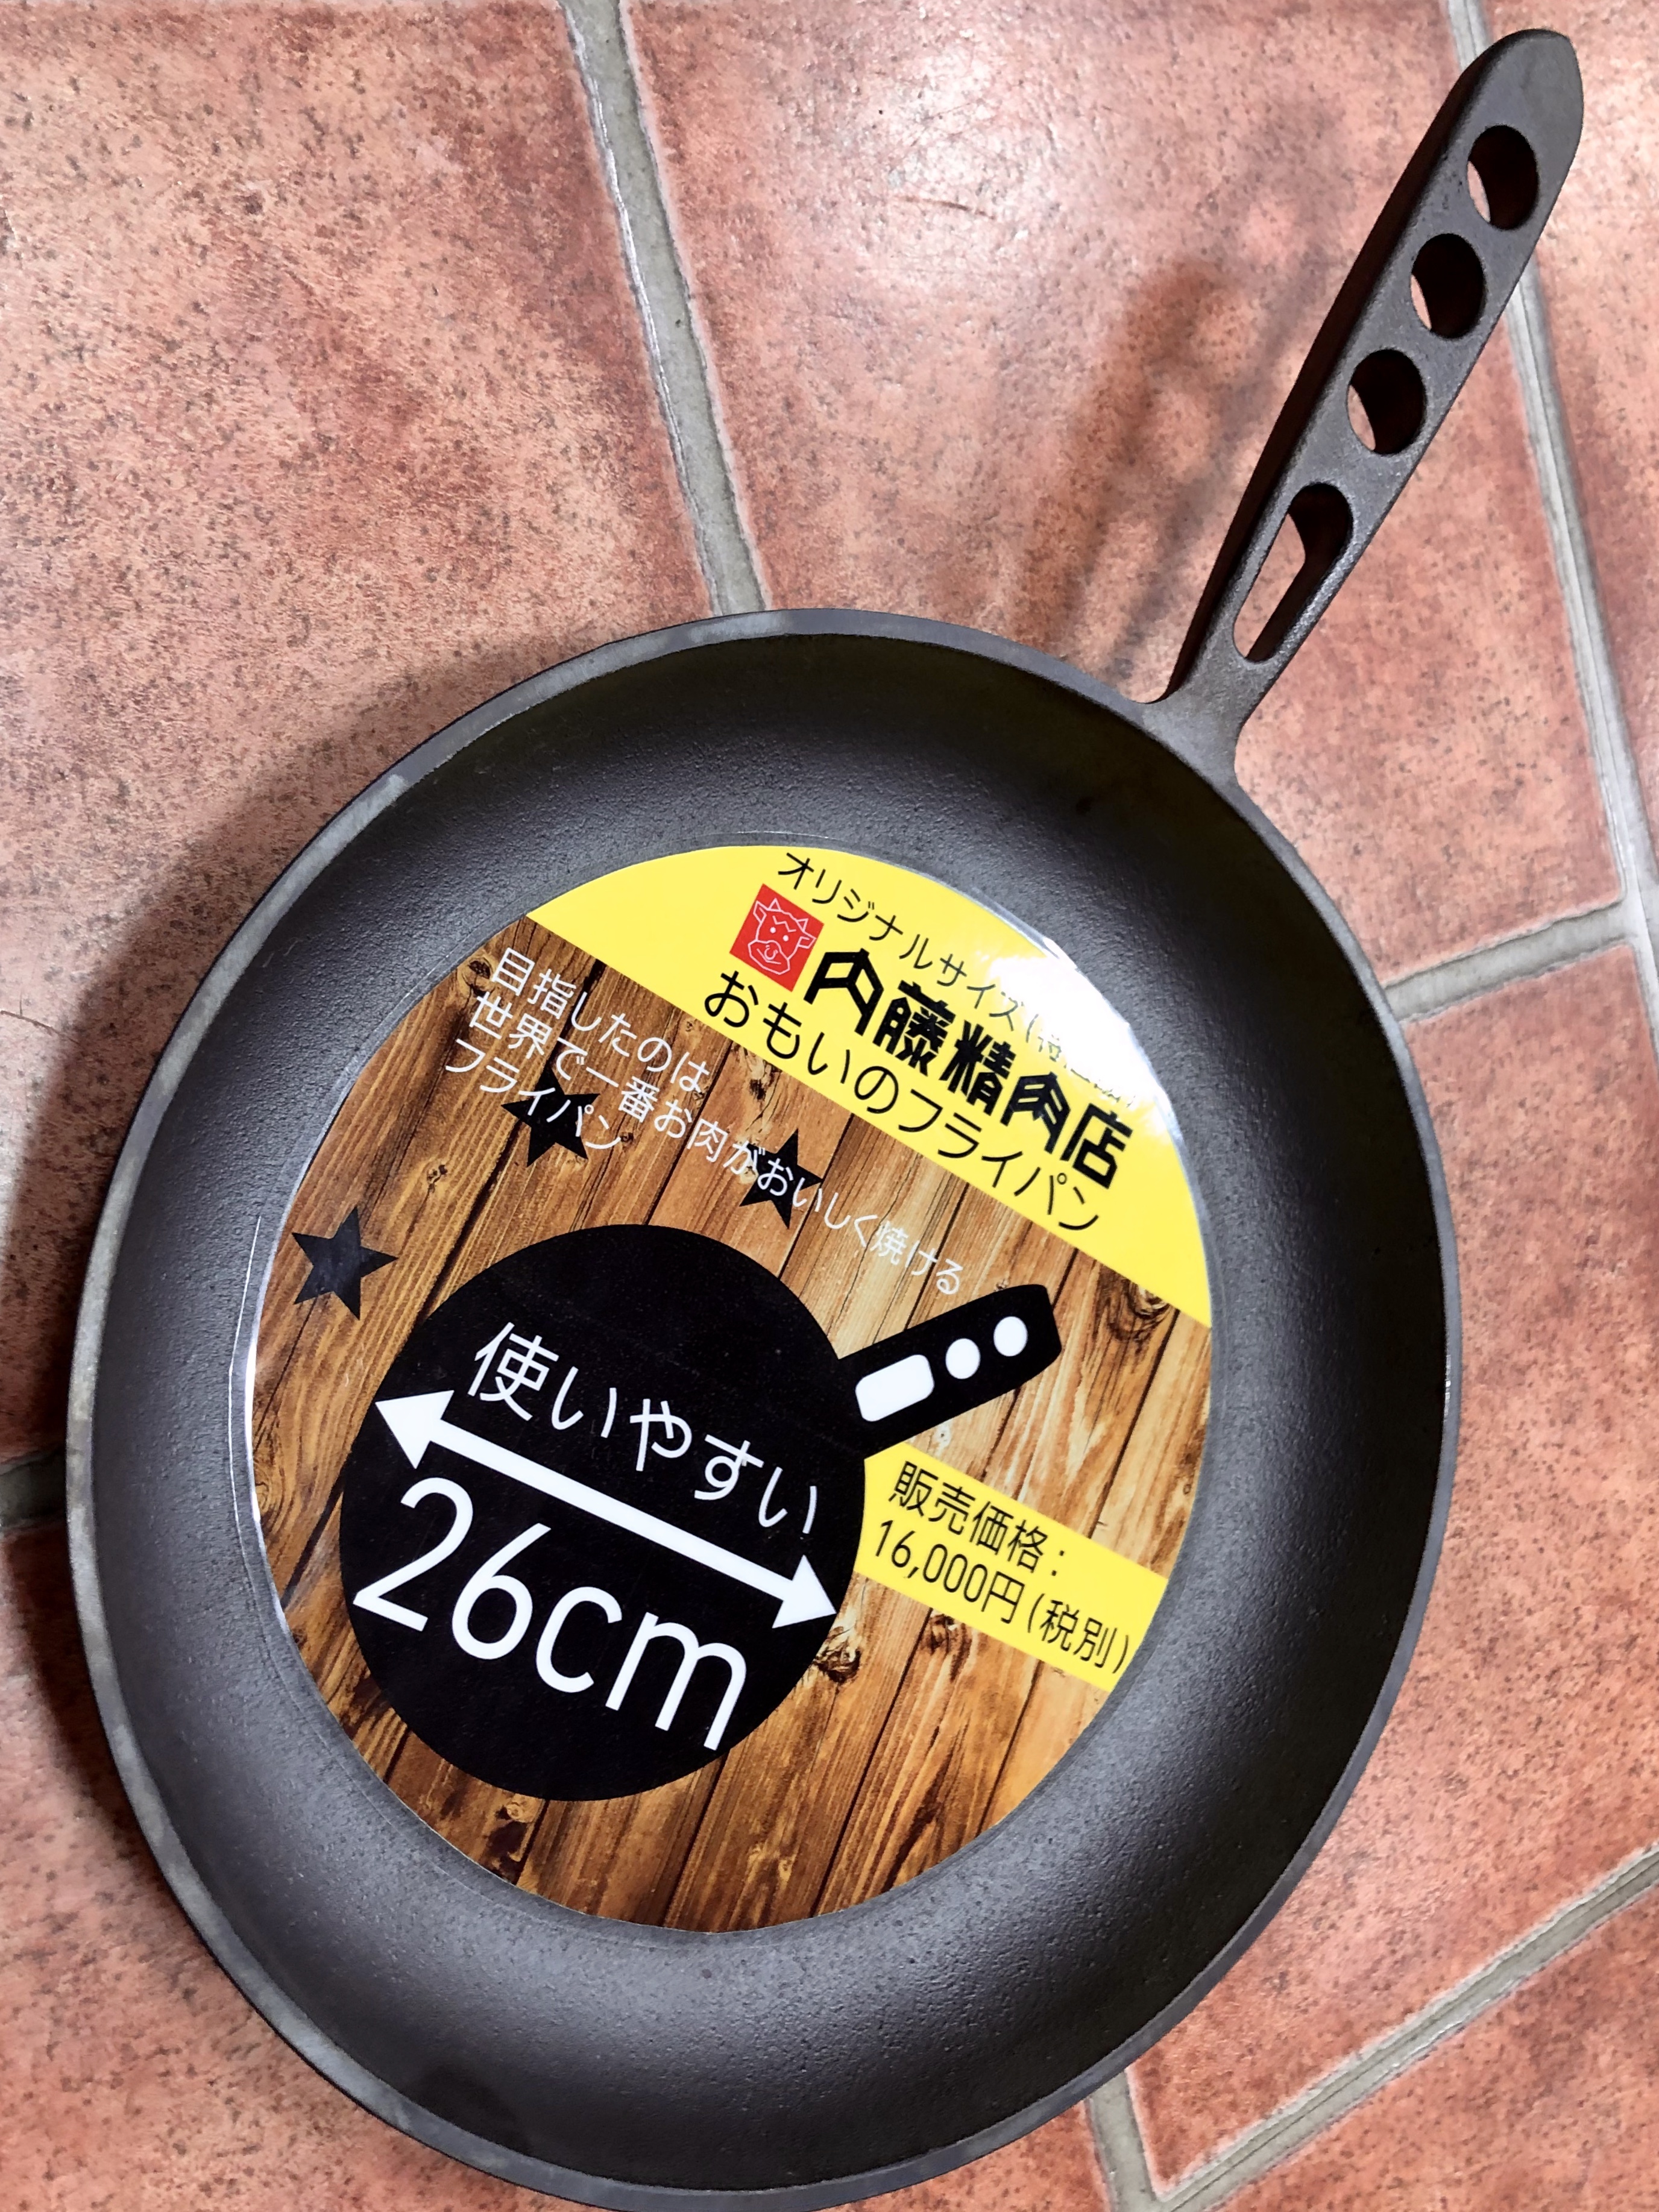 おもいのフライパン (26cm) - 鍋/フライパン